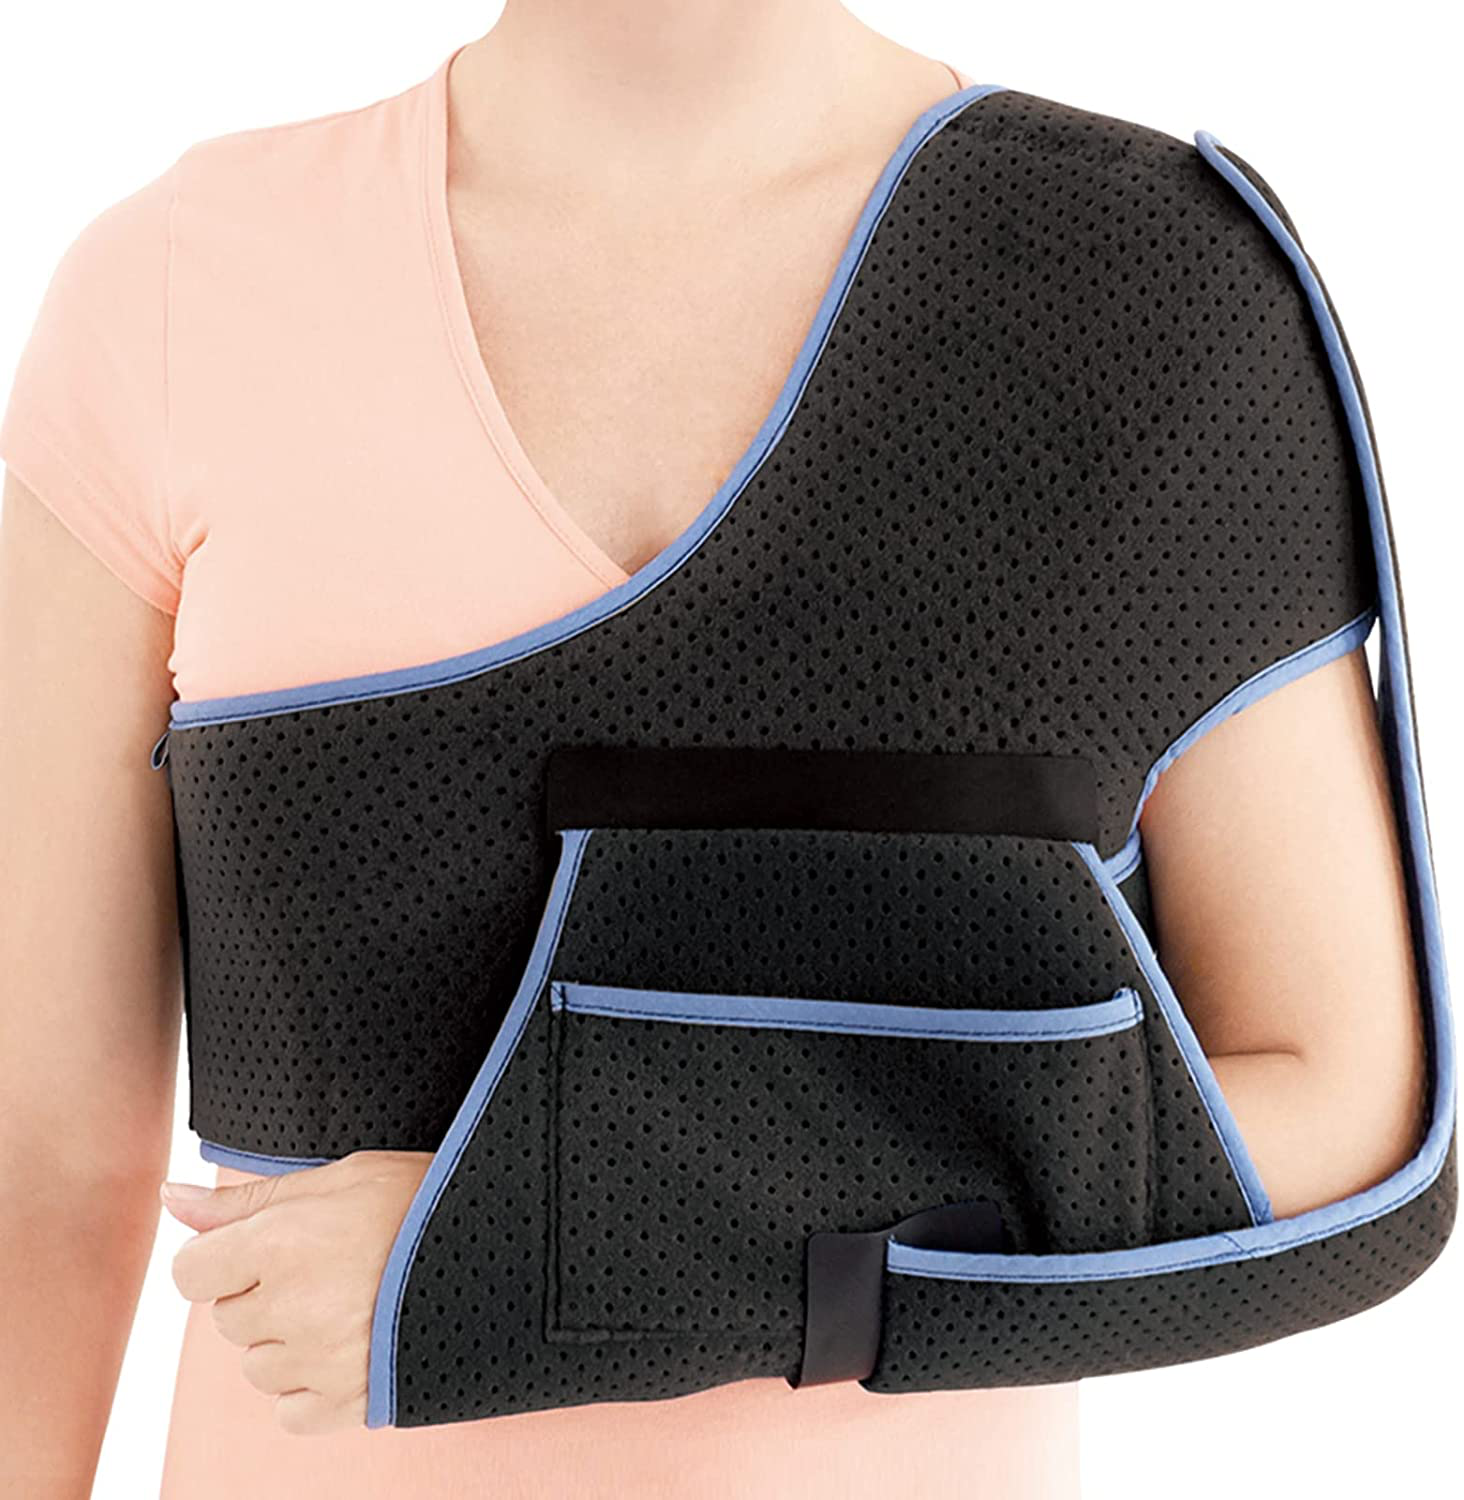 Arm Sling Shoulder Injury Immobilizer for Sleeping - Medical Sling